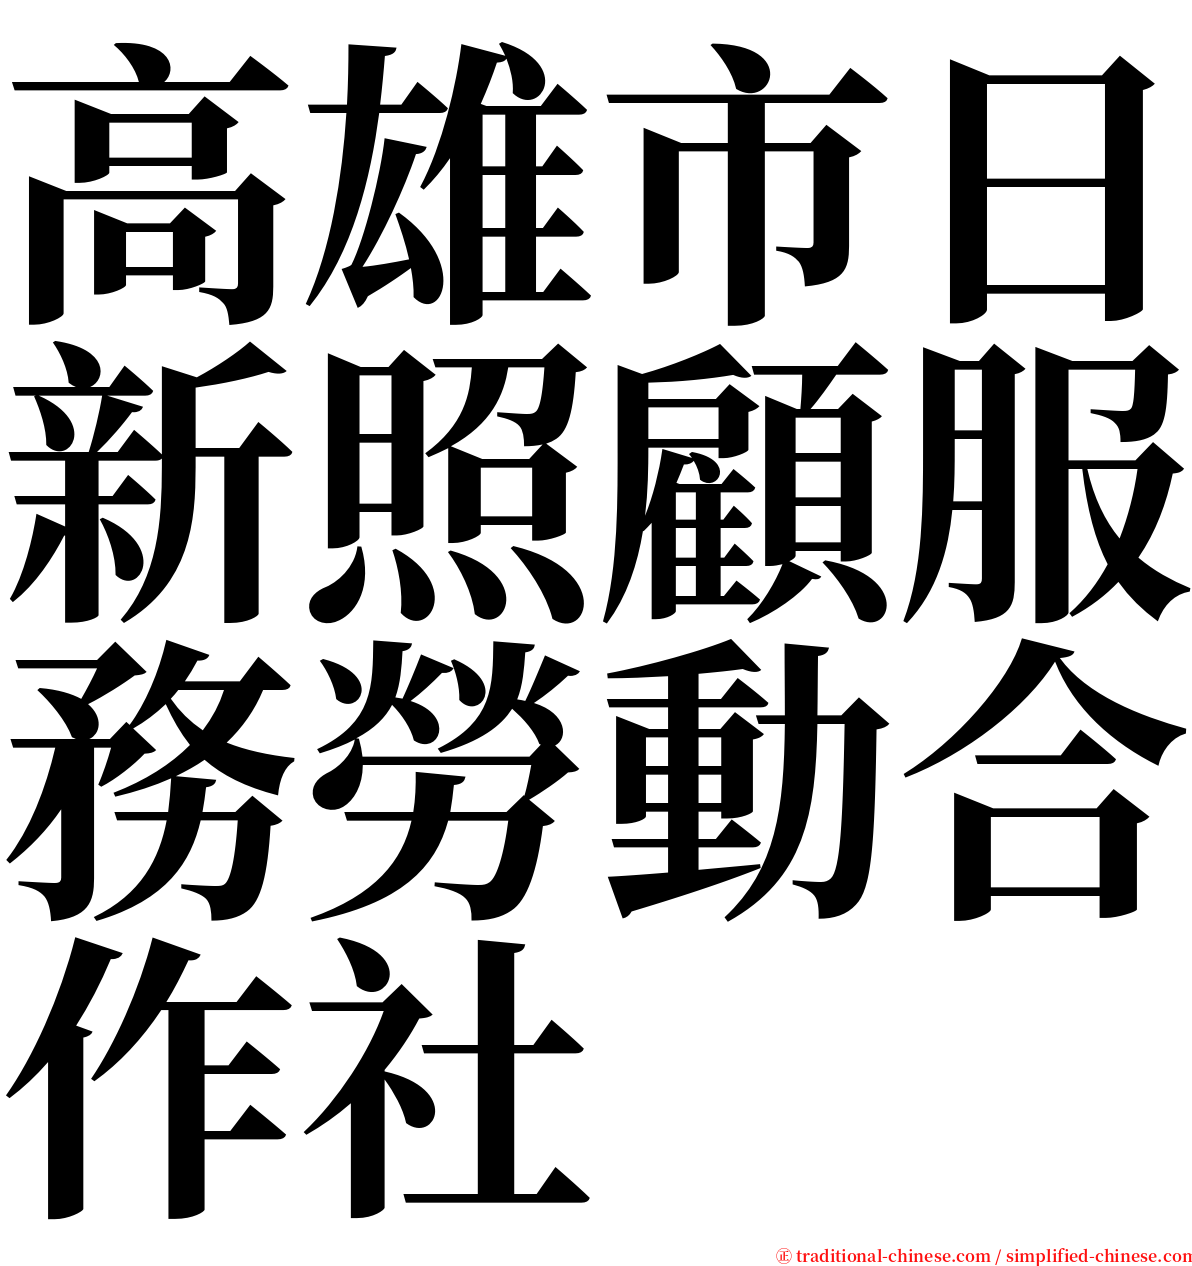 高雄市日新照顧服務勞動合作社 serif font